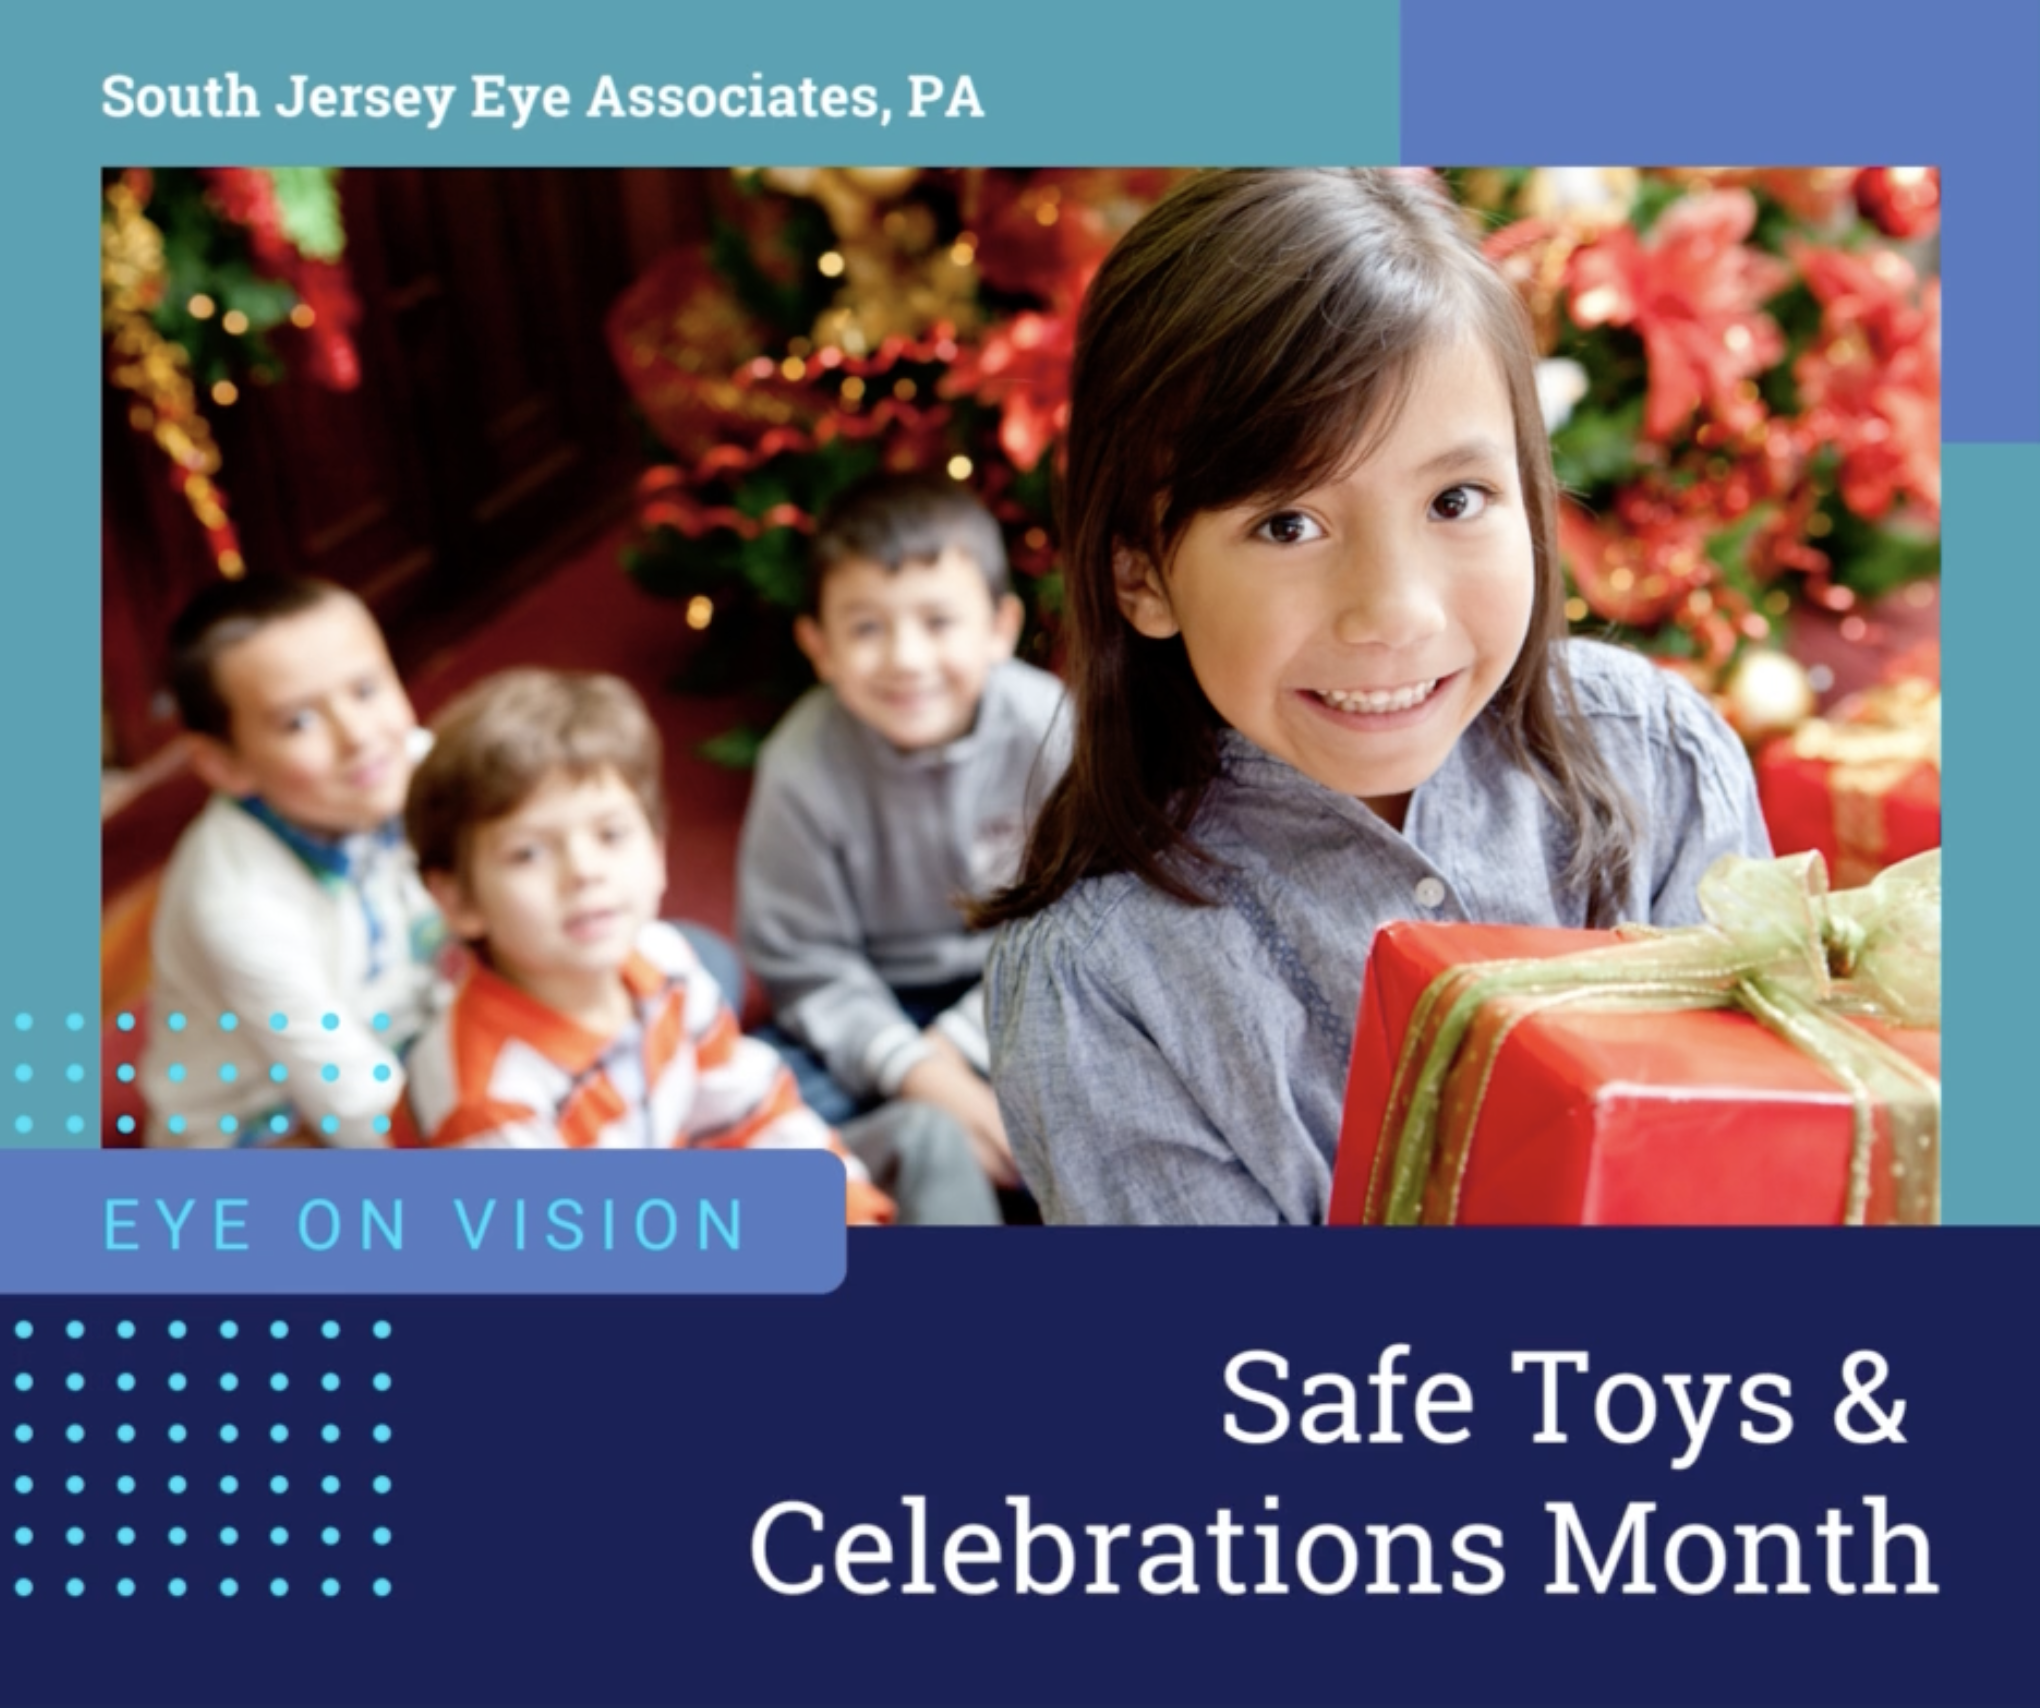 December is Safe Toys & Celebrations Month